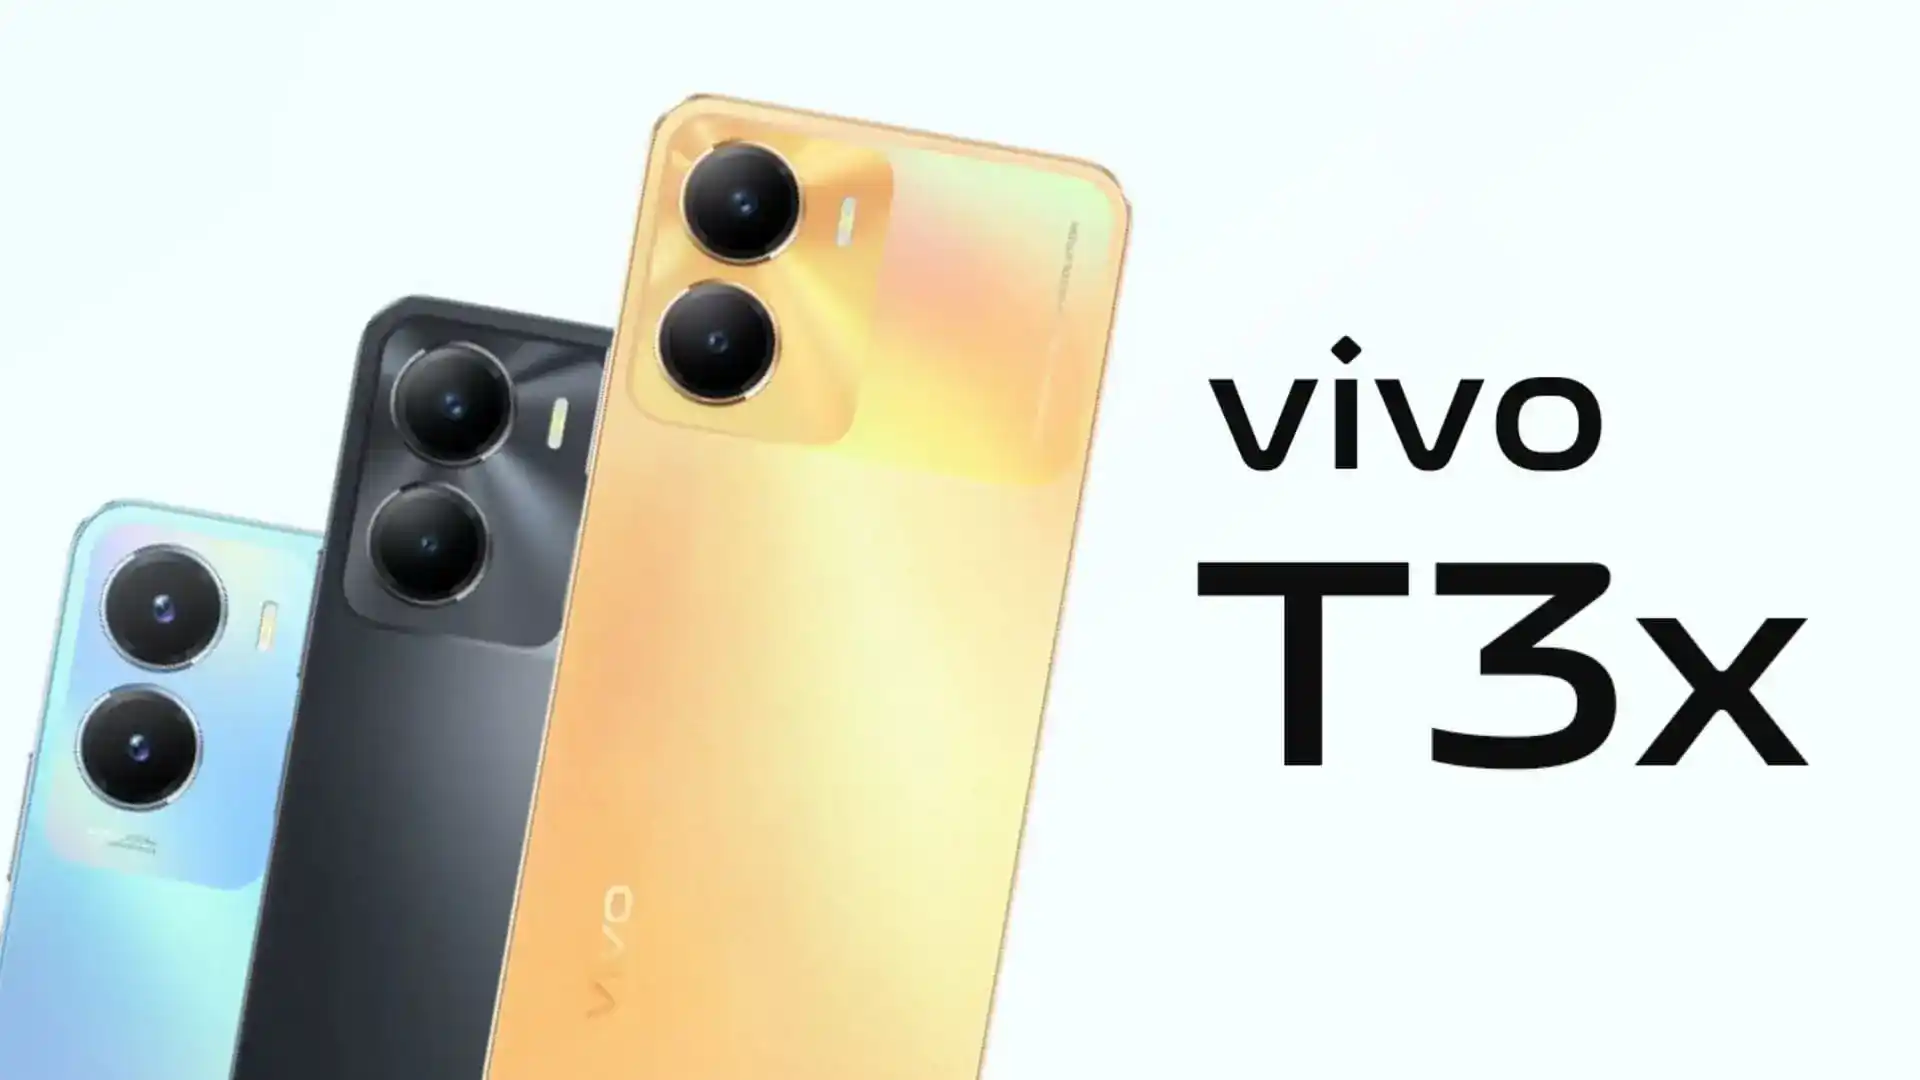 Vivo forbereder sig på at lancere en ny T3x-smartphone med et kraftigt batteri og Snapdragon-processor